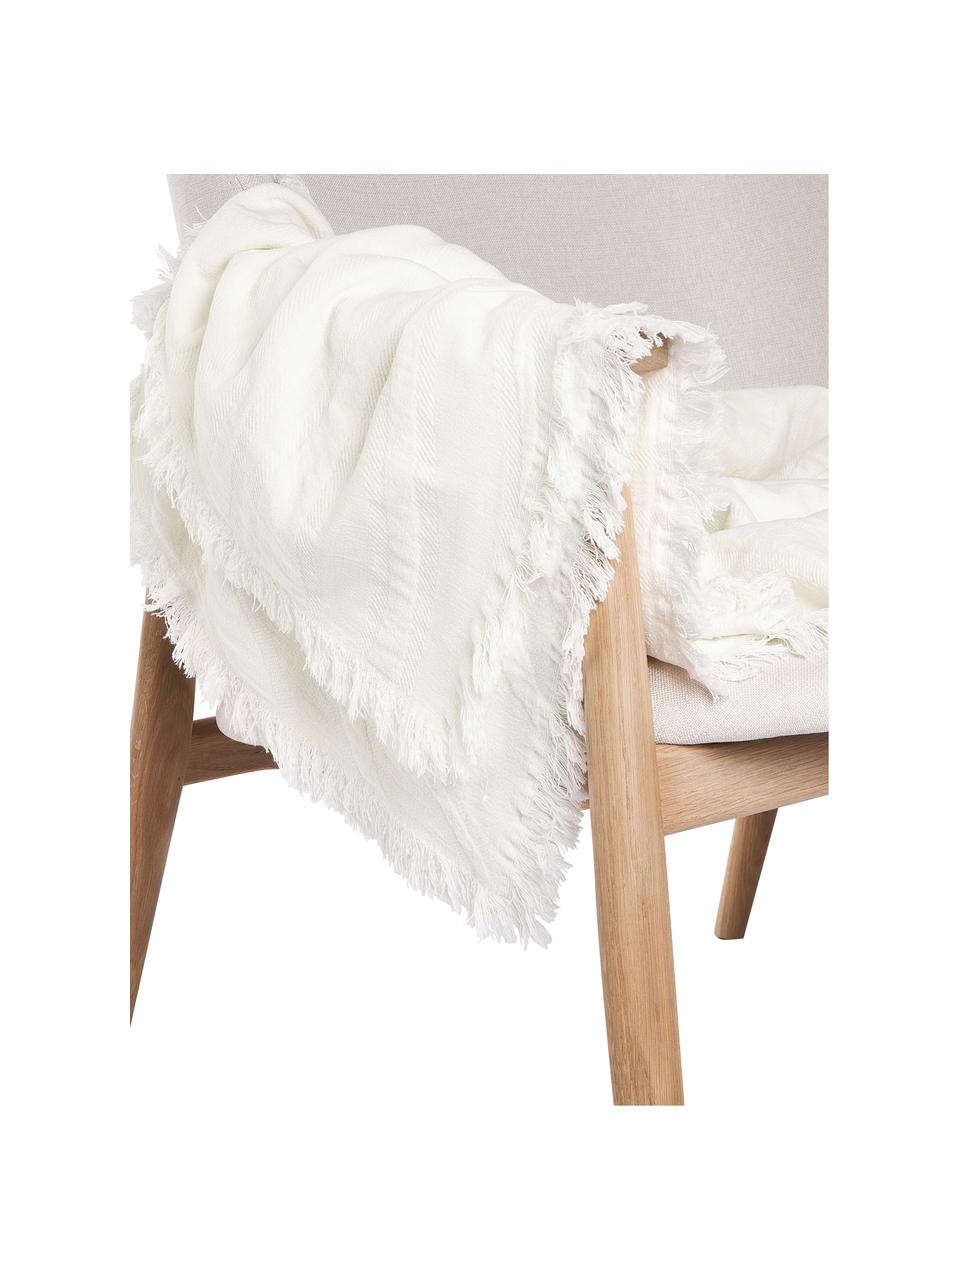 Manta de agodón texturizado con flecos Wavery, 100% algodón, Blanco crema, An 130 x L 170 cm